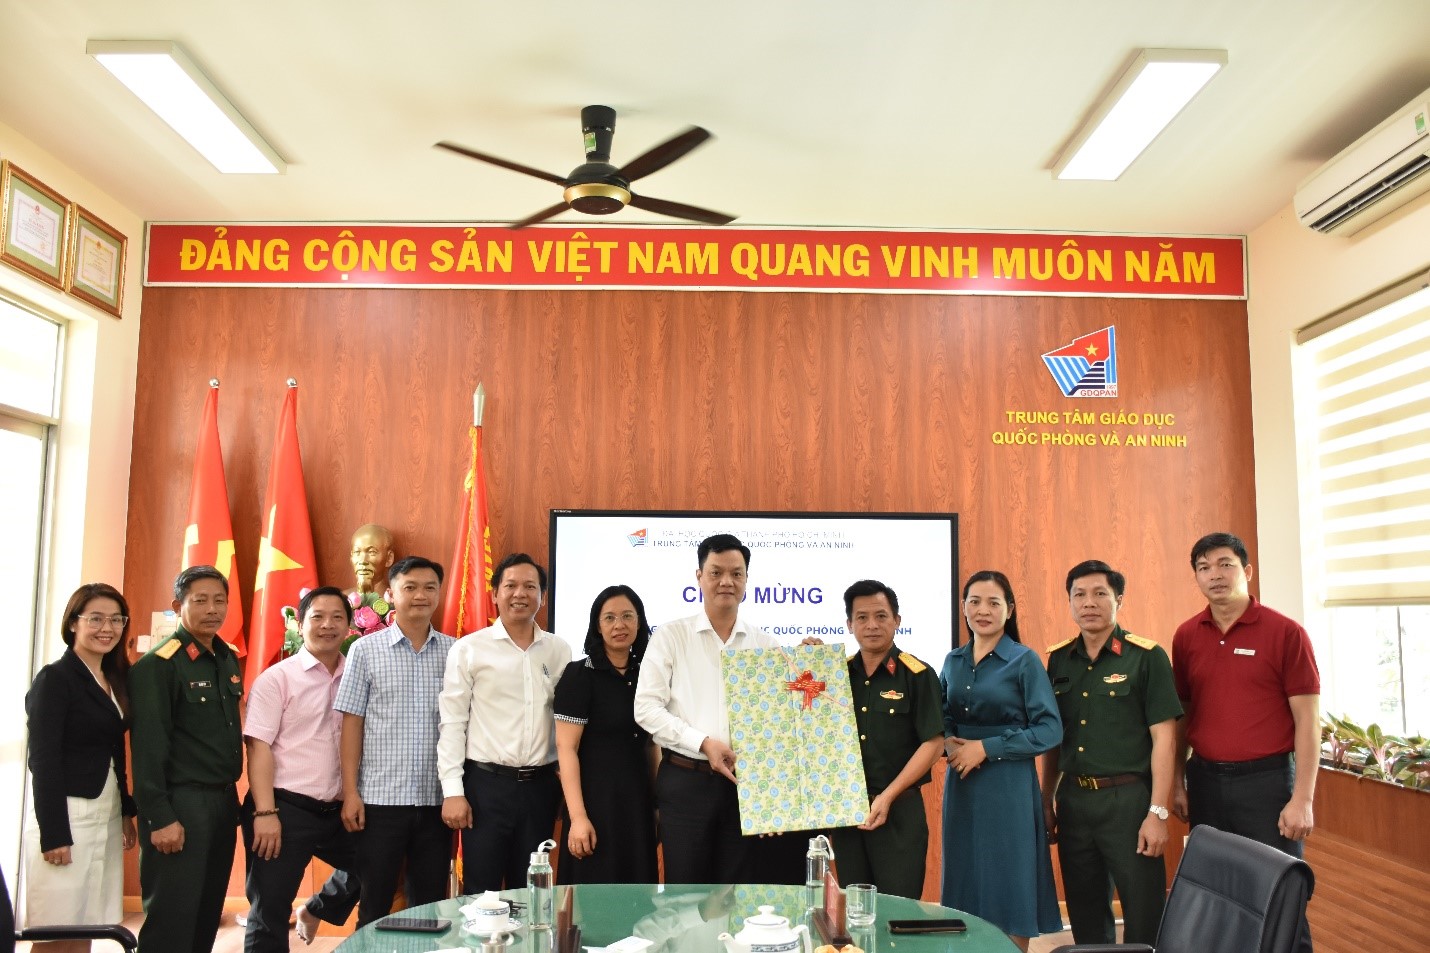 Khoa Giáo dục Quốc phòng và An ninh Đại học Đà Nẵng đến tham quan, học tập thực tế tại Trung tâm